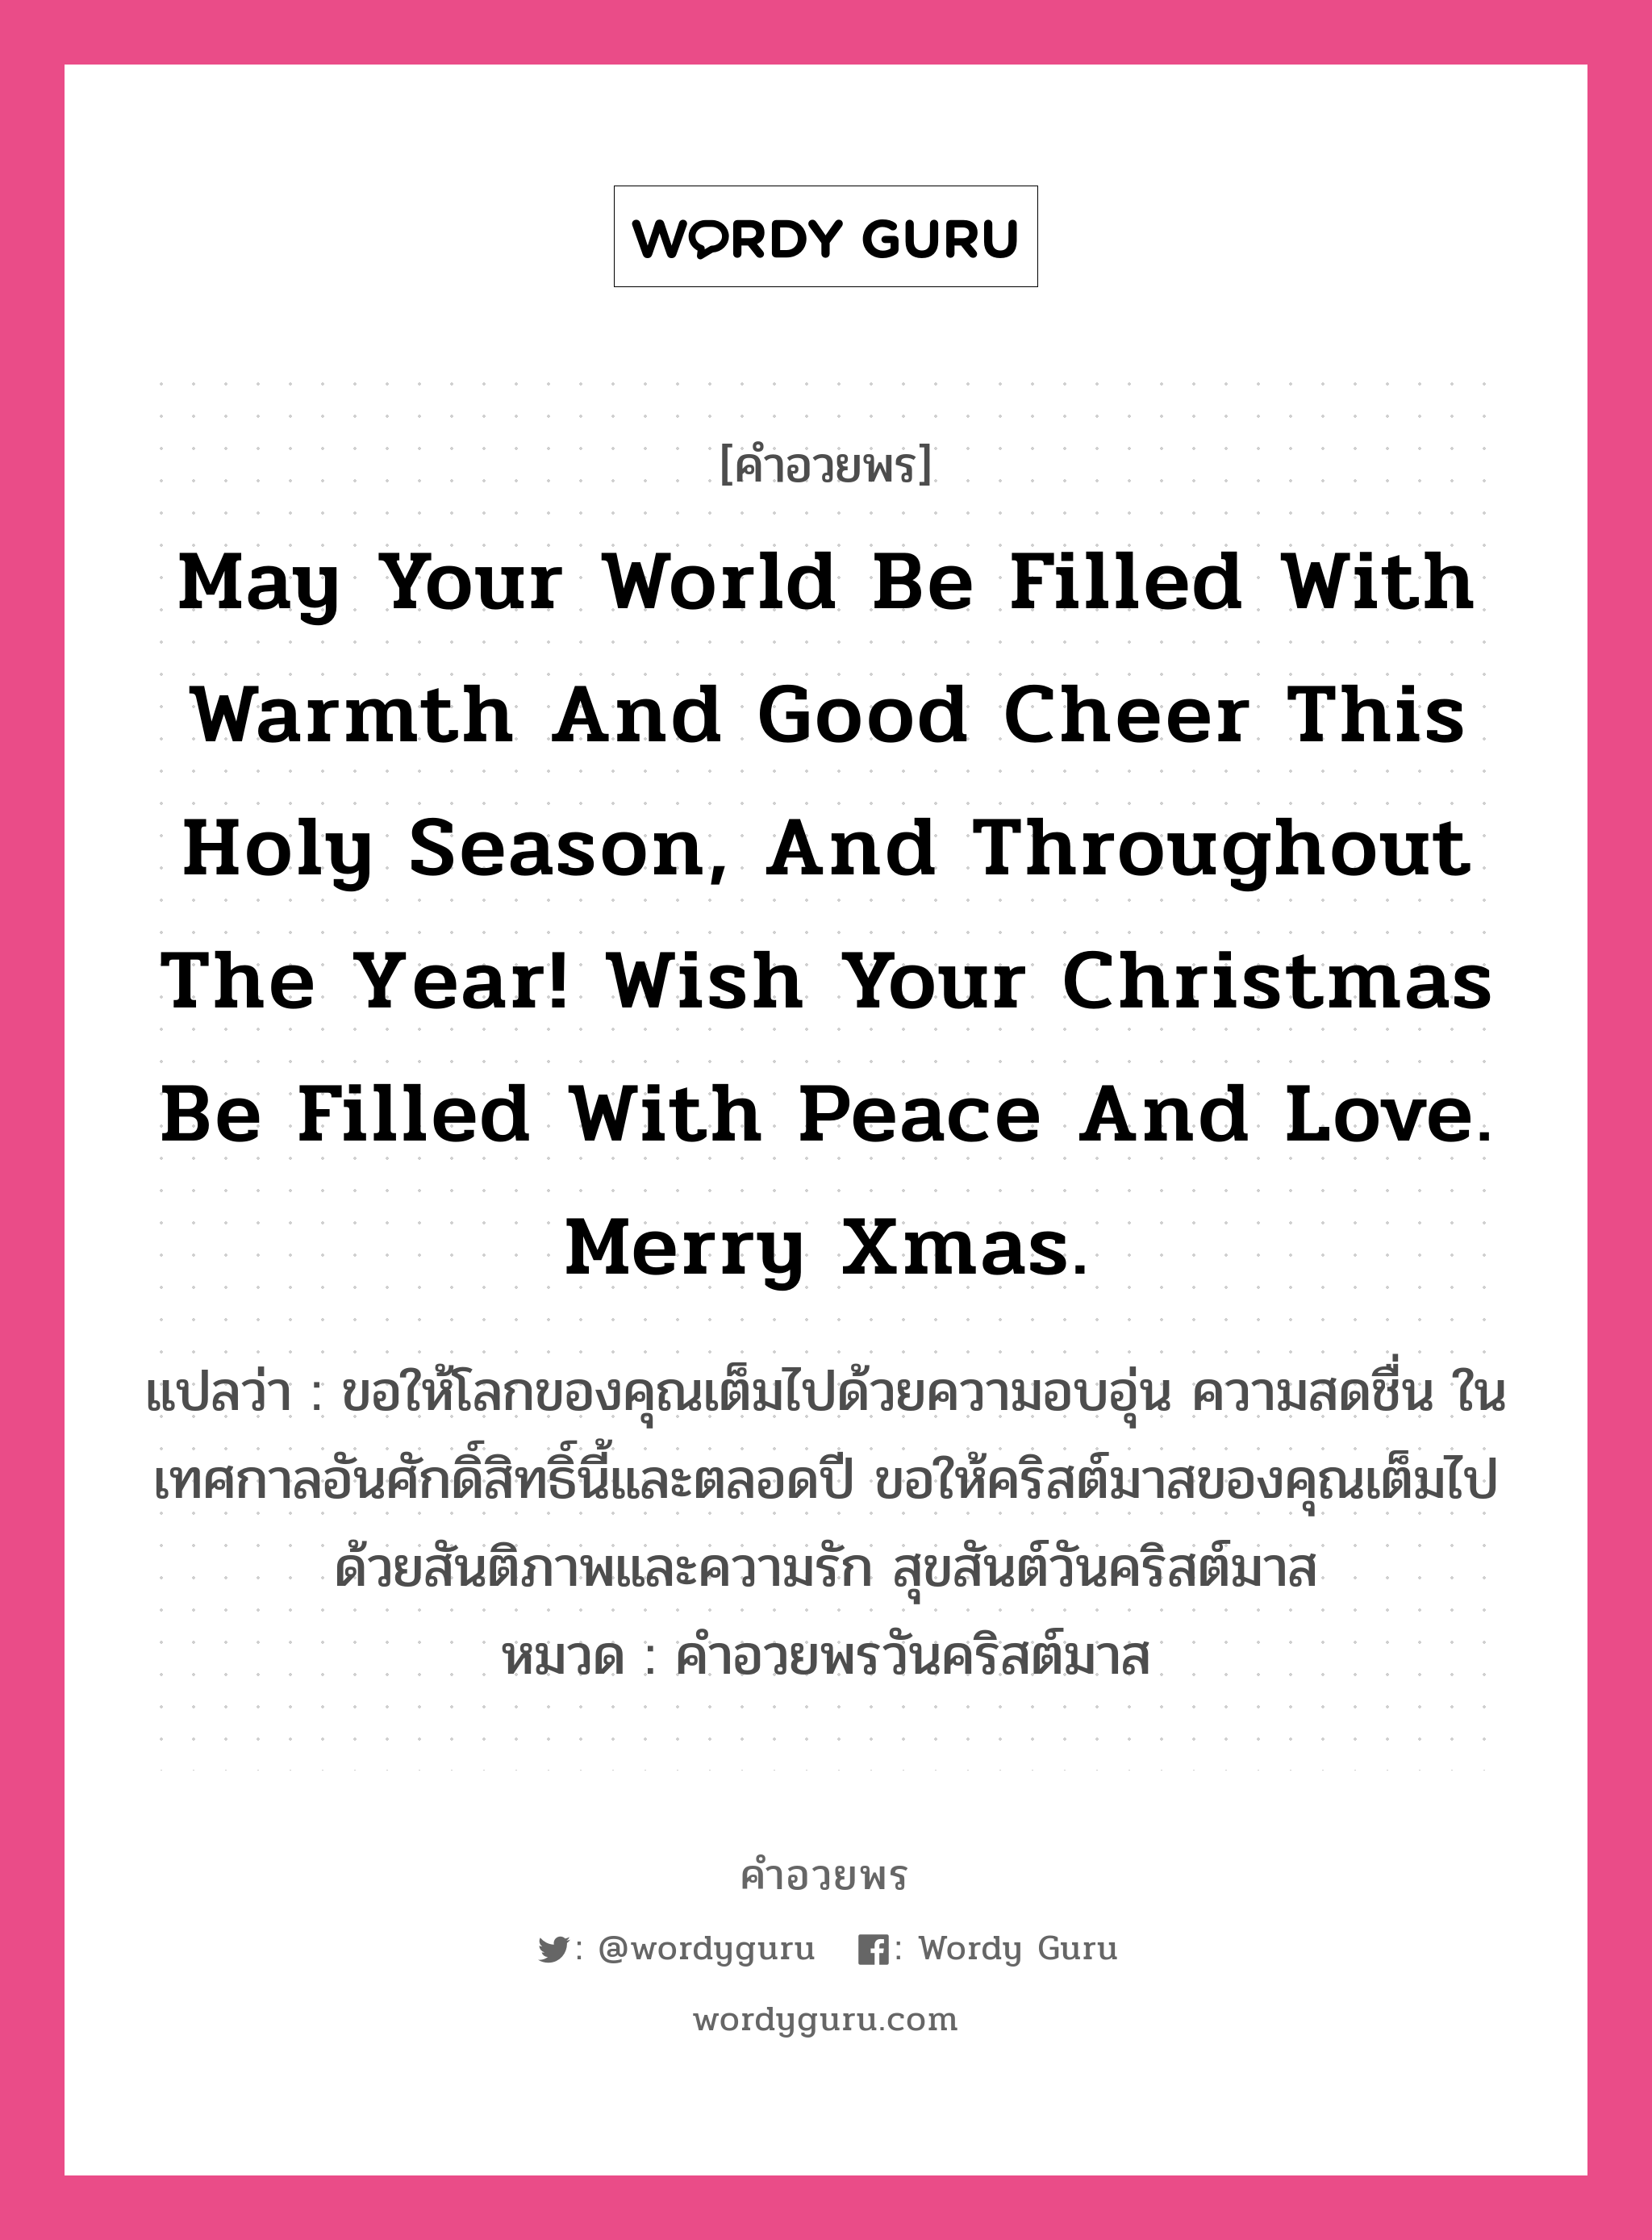 คำอวยพร May your world be filled with warmth and good cheer this Holy season, and throughout the year! Wish your Christmas be filled with peace and love. Merry Xmas. คืออะไร?, แปลว่า ขอให้โลกของคุณเต็มไปด้วยความอบอุ่น ความสดชื่น ในเทศกาลอันศักดิ์สิทธิ์นี้และตลอดปี ขอให้คริสต์มาสของคุณเต็มไปด้วยสันติภาพและความรัก สุขสันต์วันคริสต์มาส หมวด คำอวยพรวันคริสต์มาส หมวด คำอวยพรวันคริสต์มาส